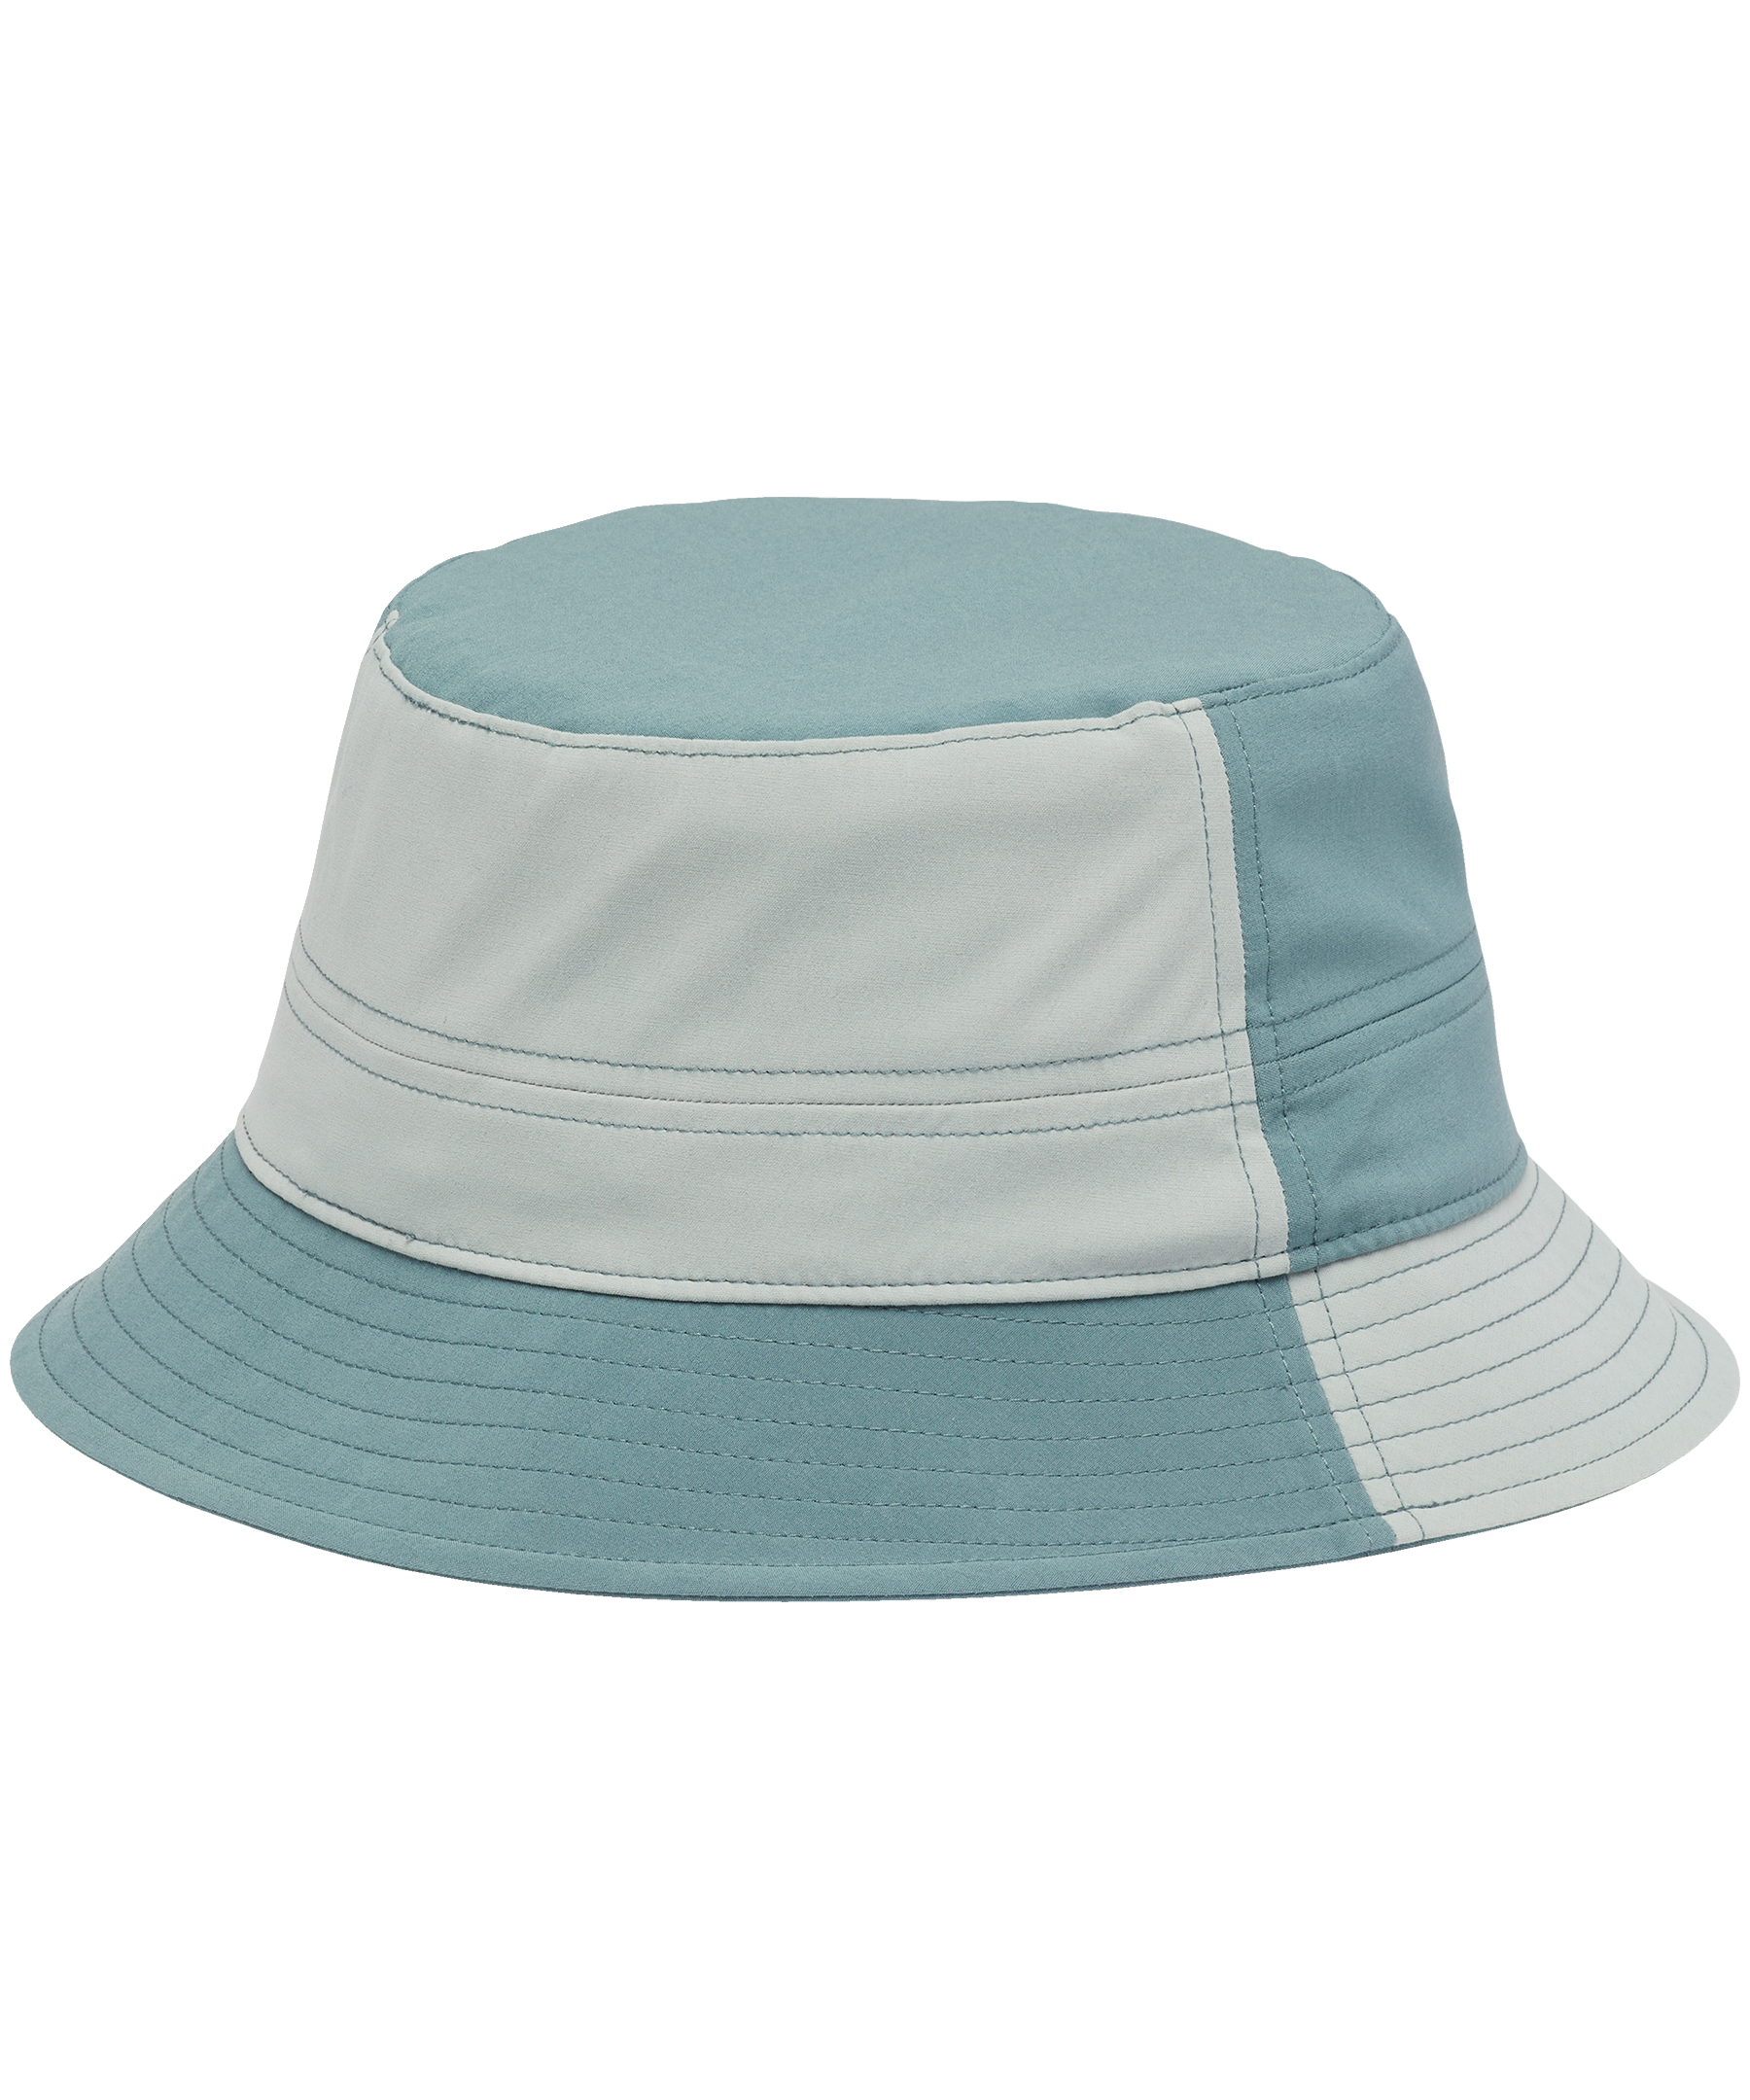 Columbia Men's Trek Omni-Shade Bucket Hat